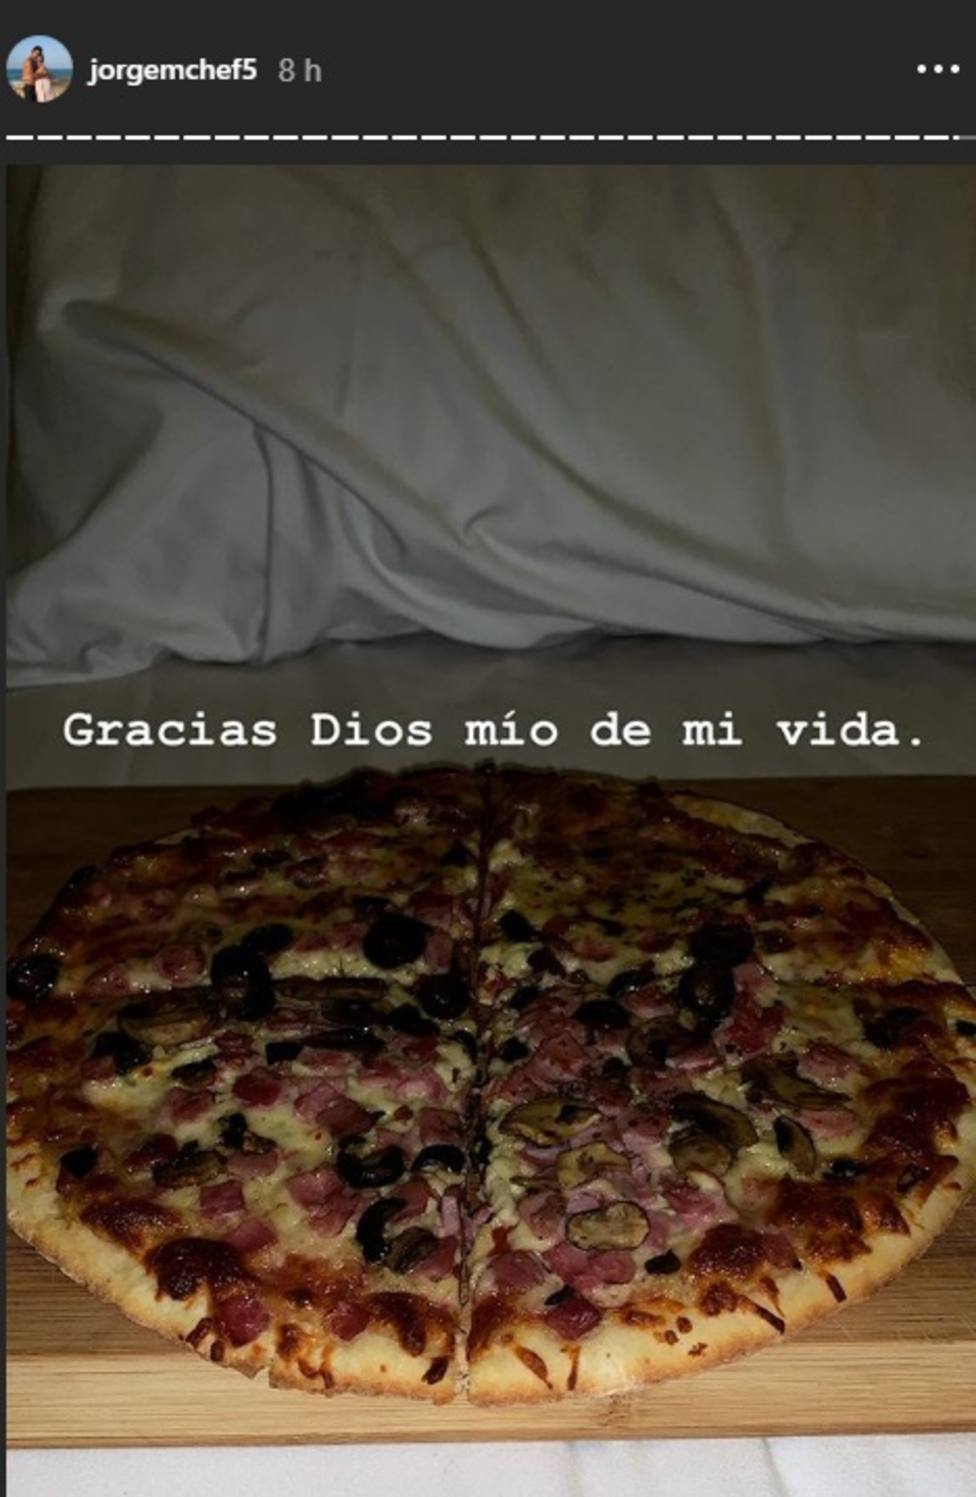 jorge brazalez pizza instagram